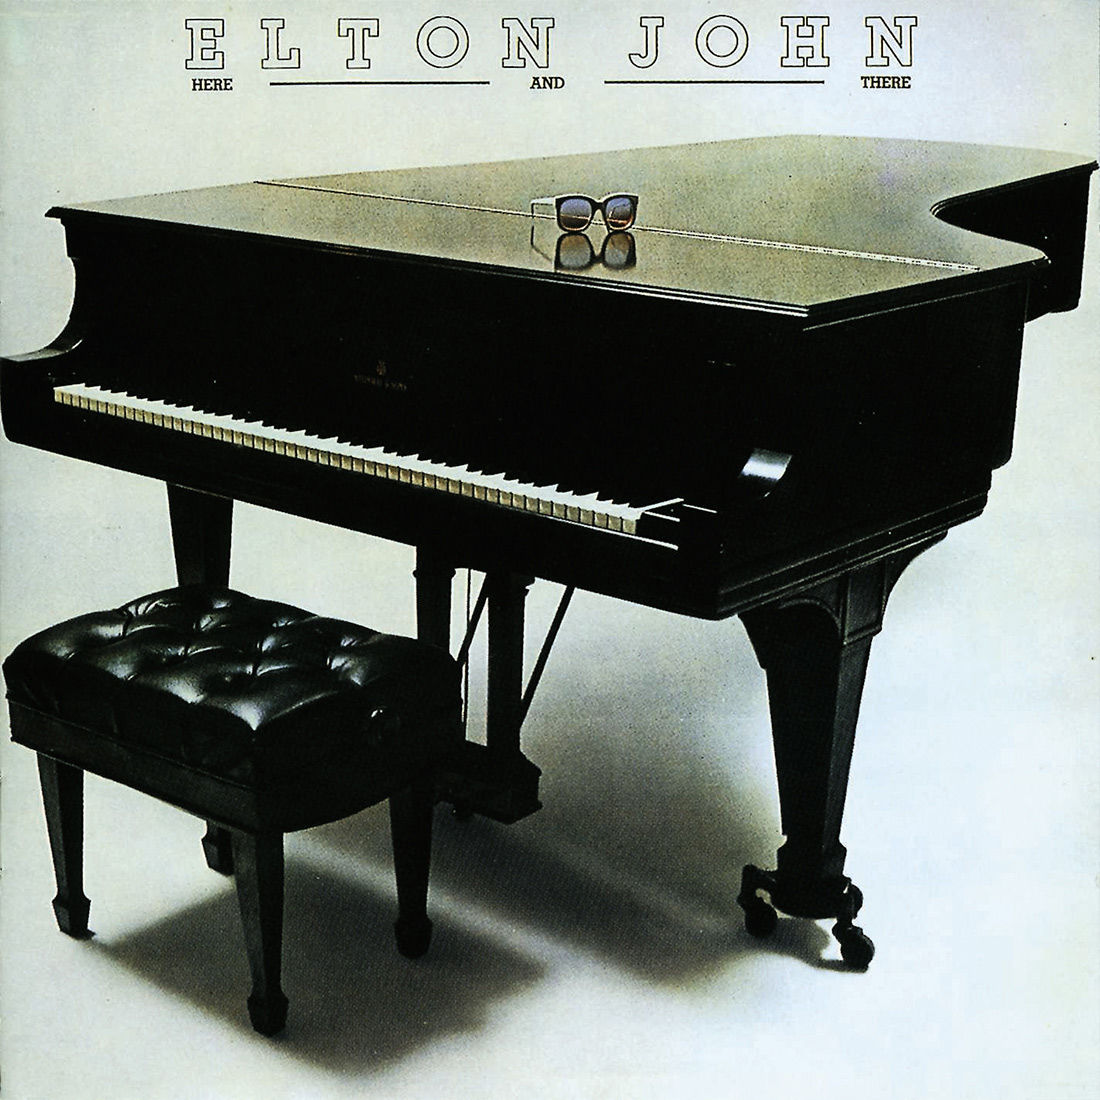 Elton John - The Big Picture [Vinyl]